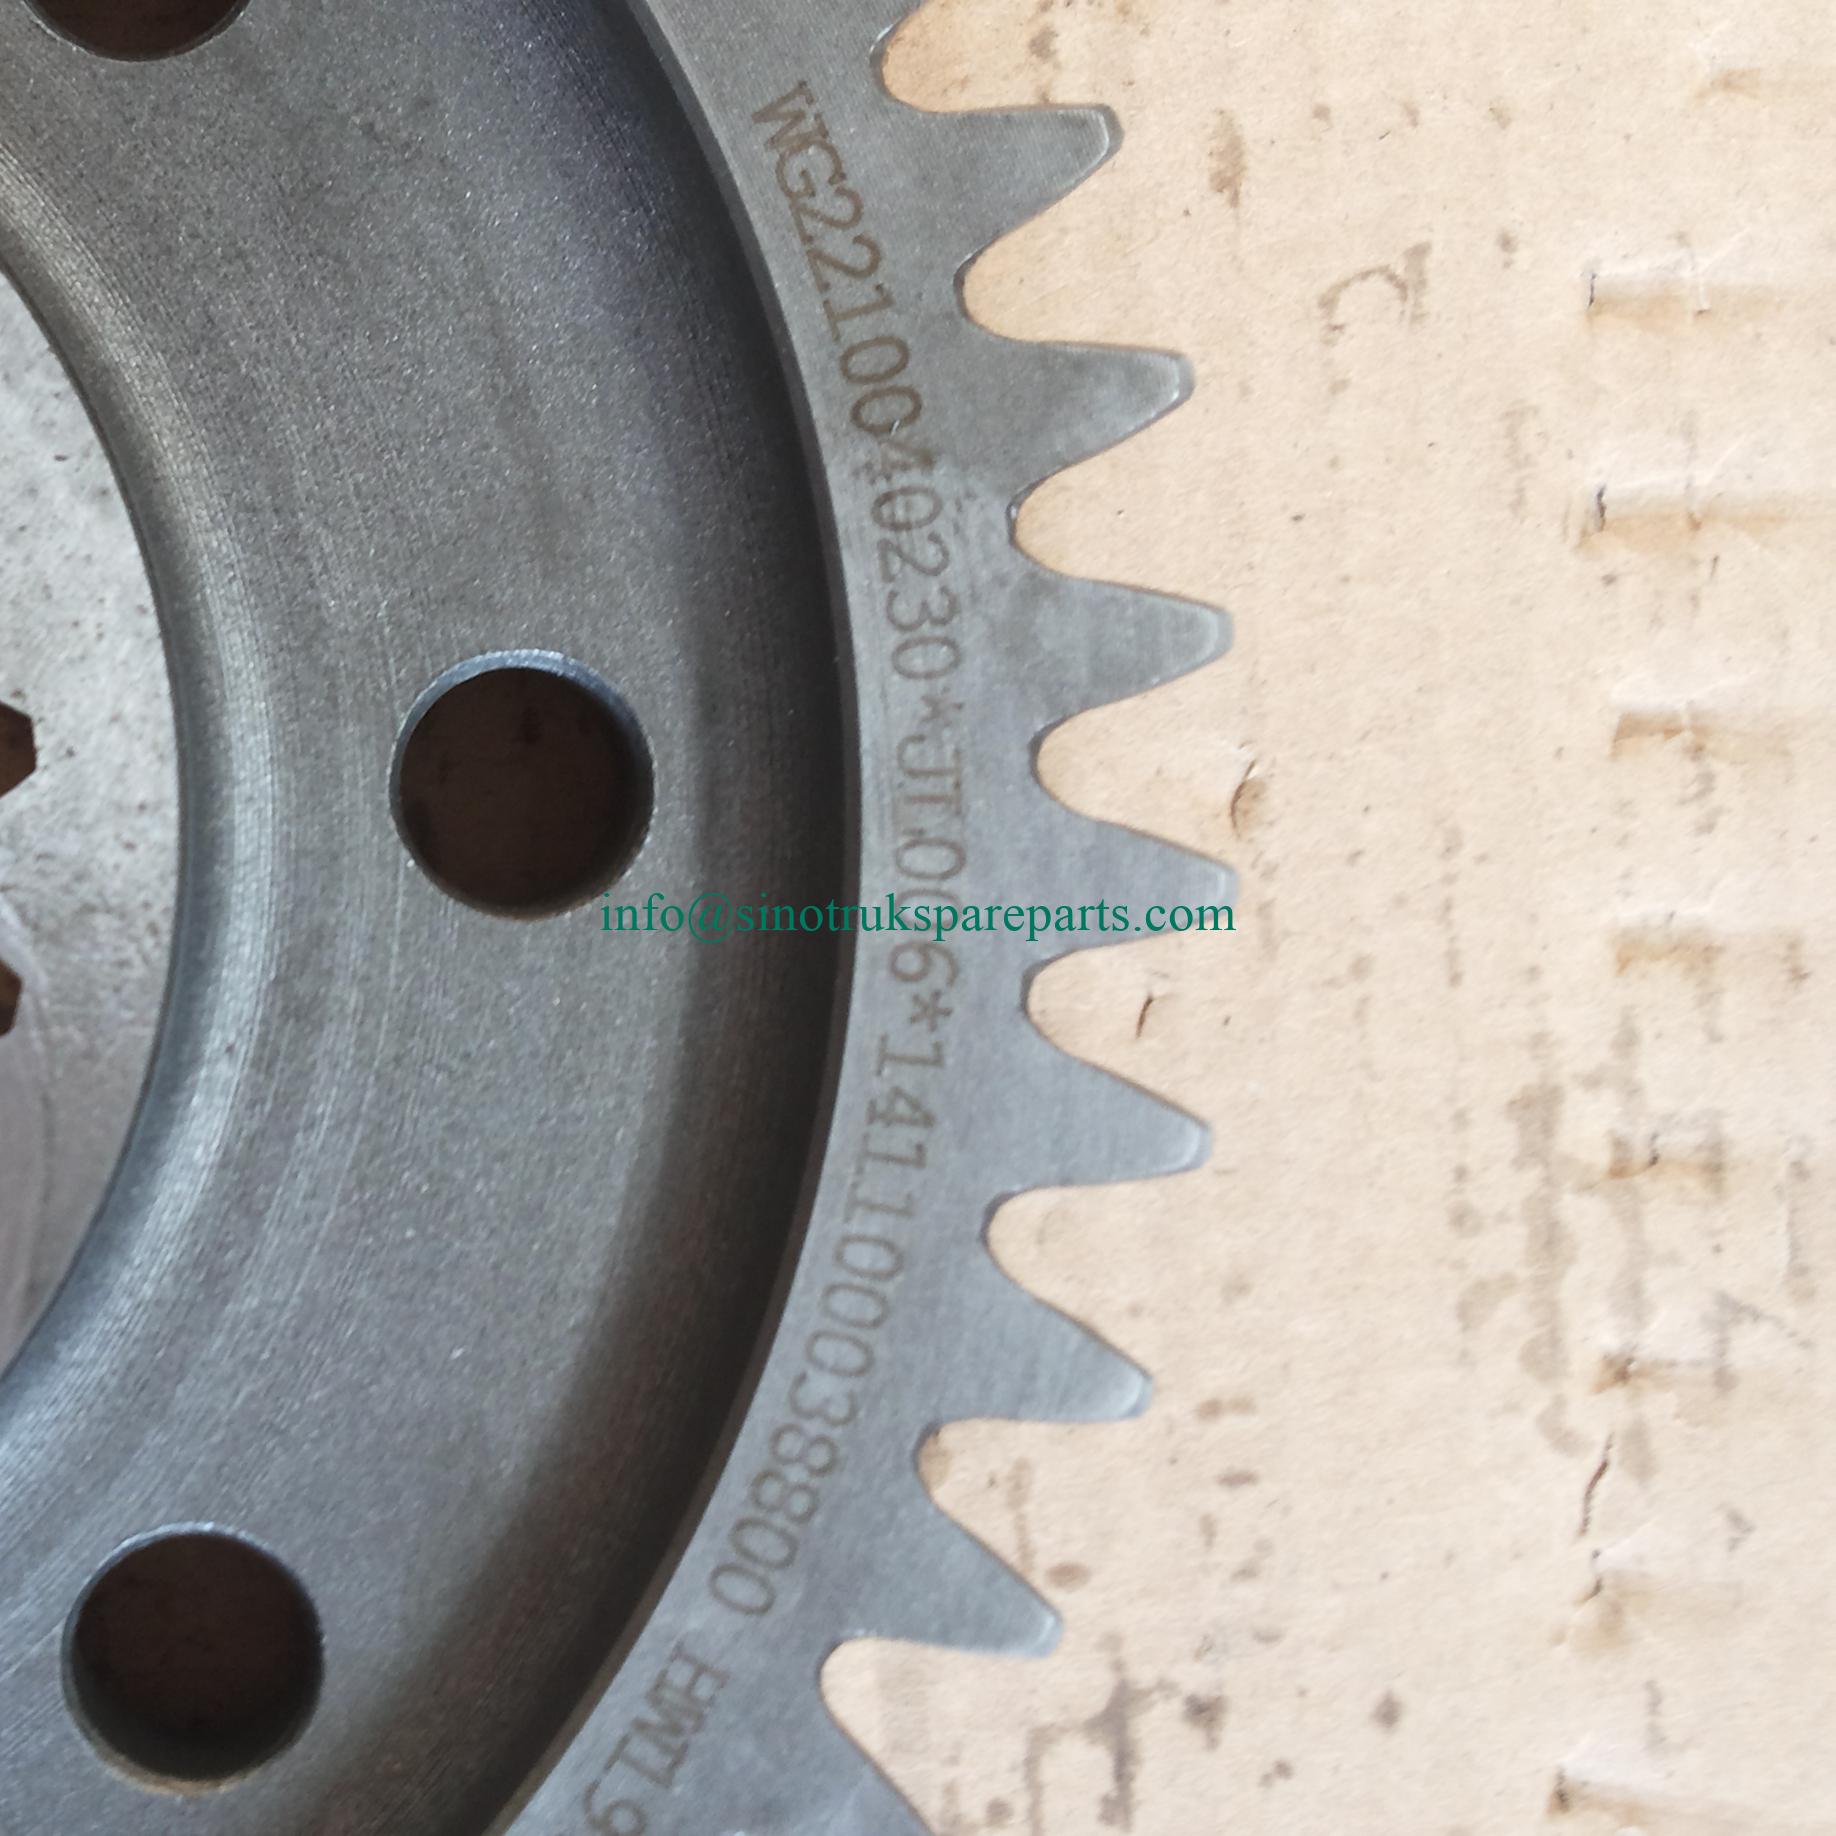 Gear-low gear for SINOTRUK az2210040230 Truck parts